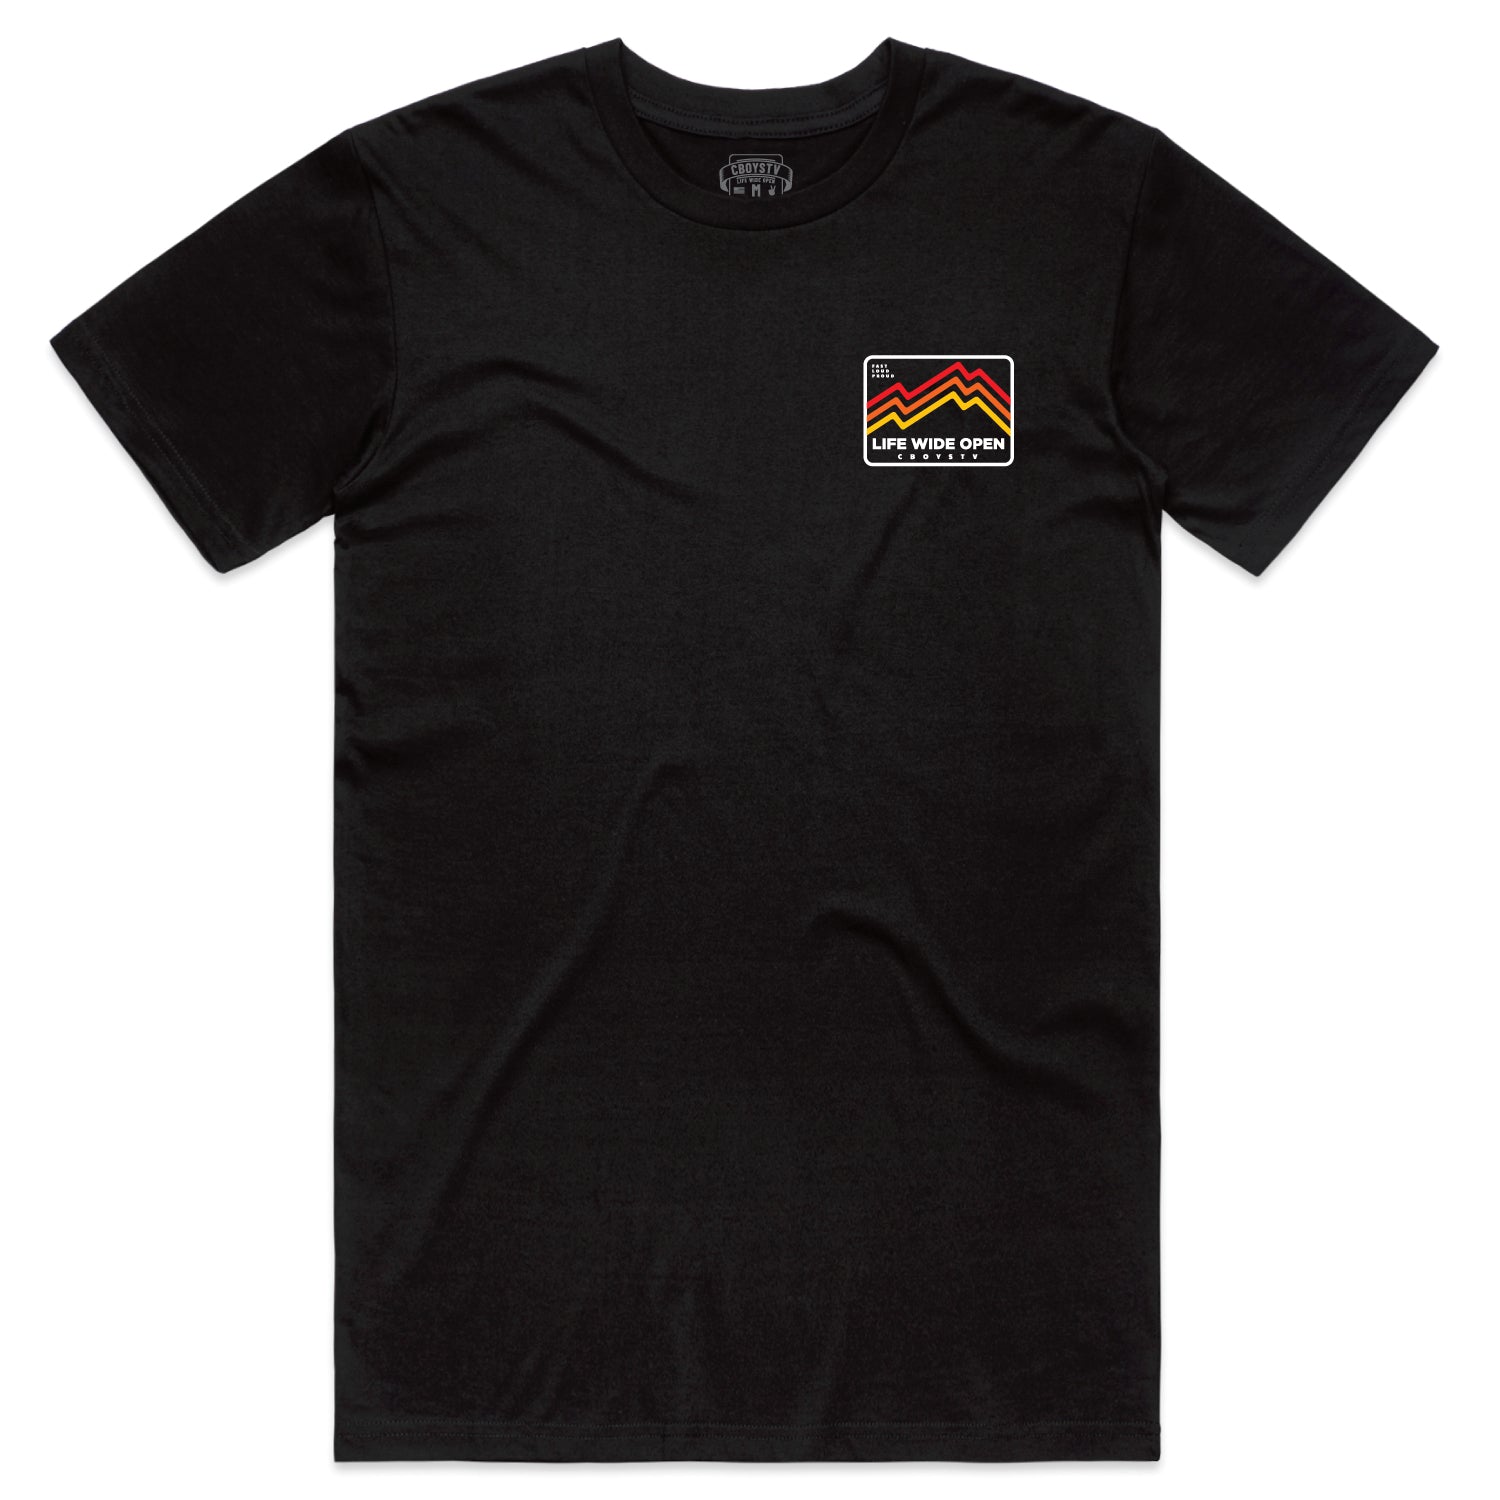 Heatwave Peak T-shirt